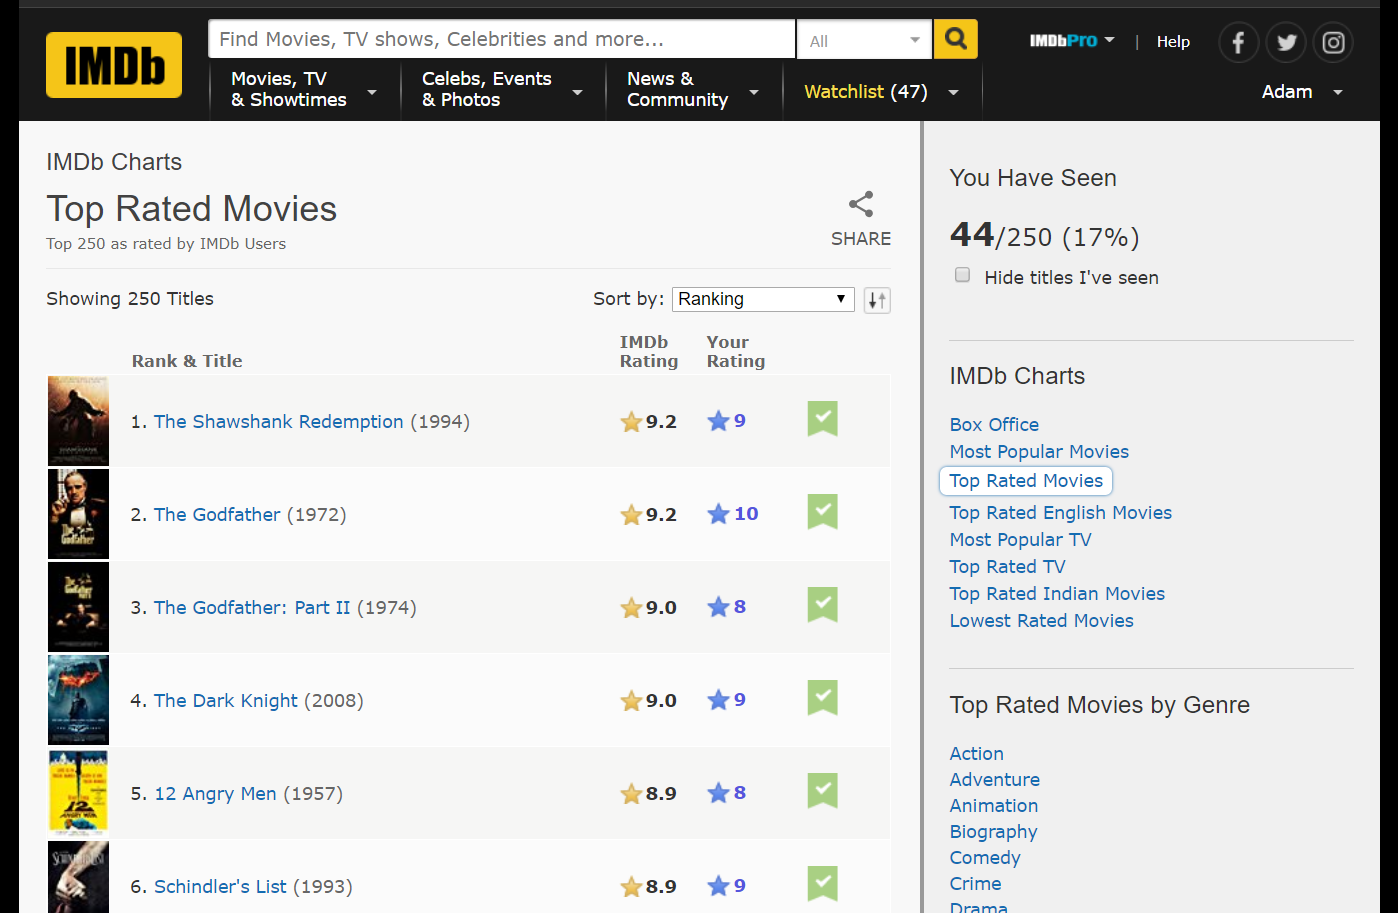 IMDB-Top1000-Movies/IMDB-Movie-Data.csv at master · peetck/IMDB-Top1000-Movies  · GitHub